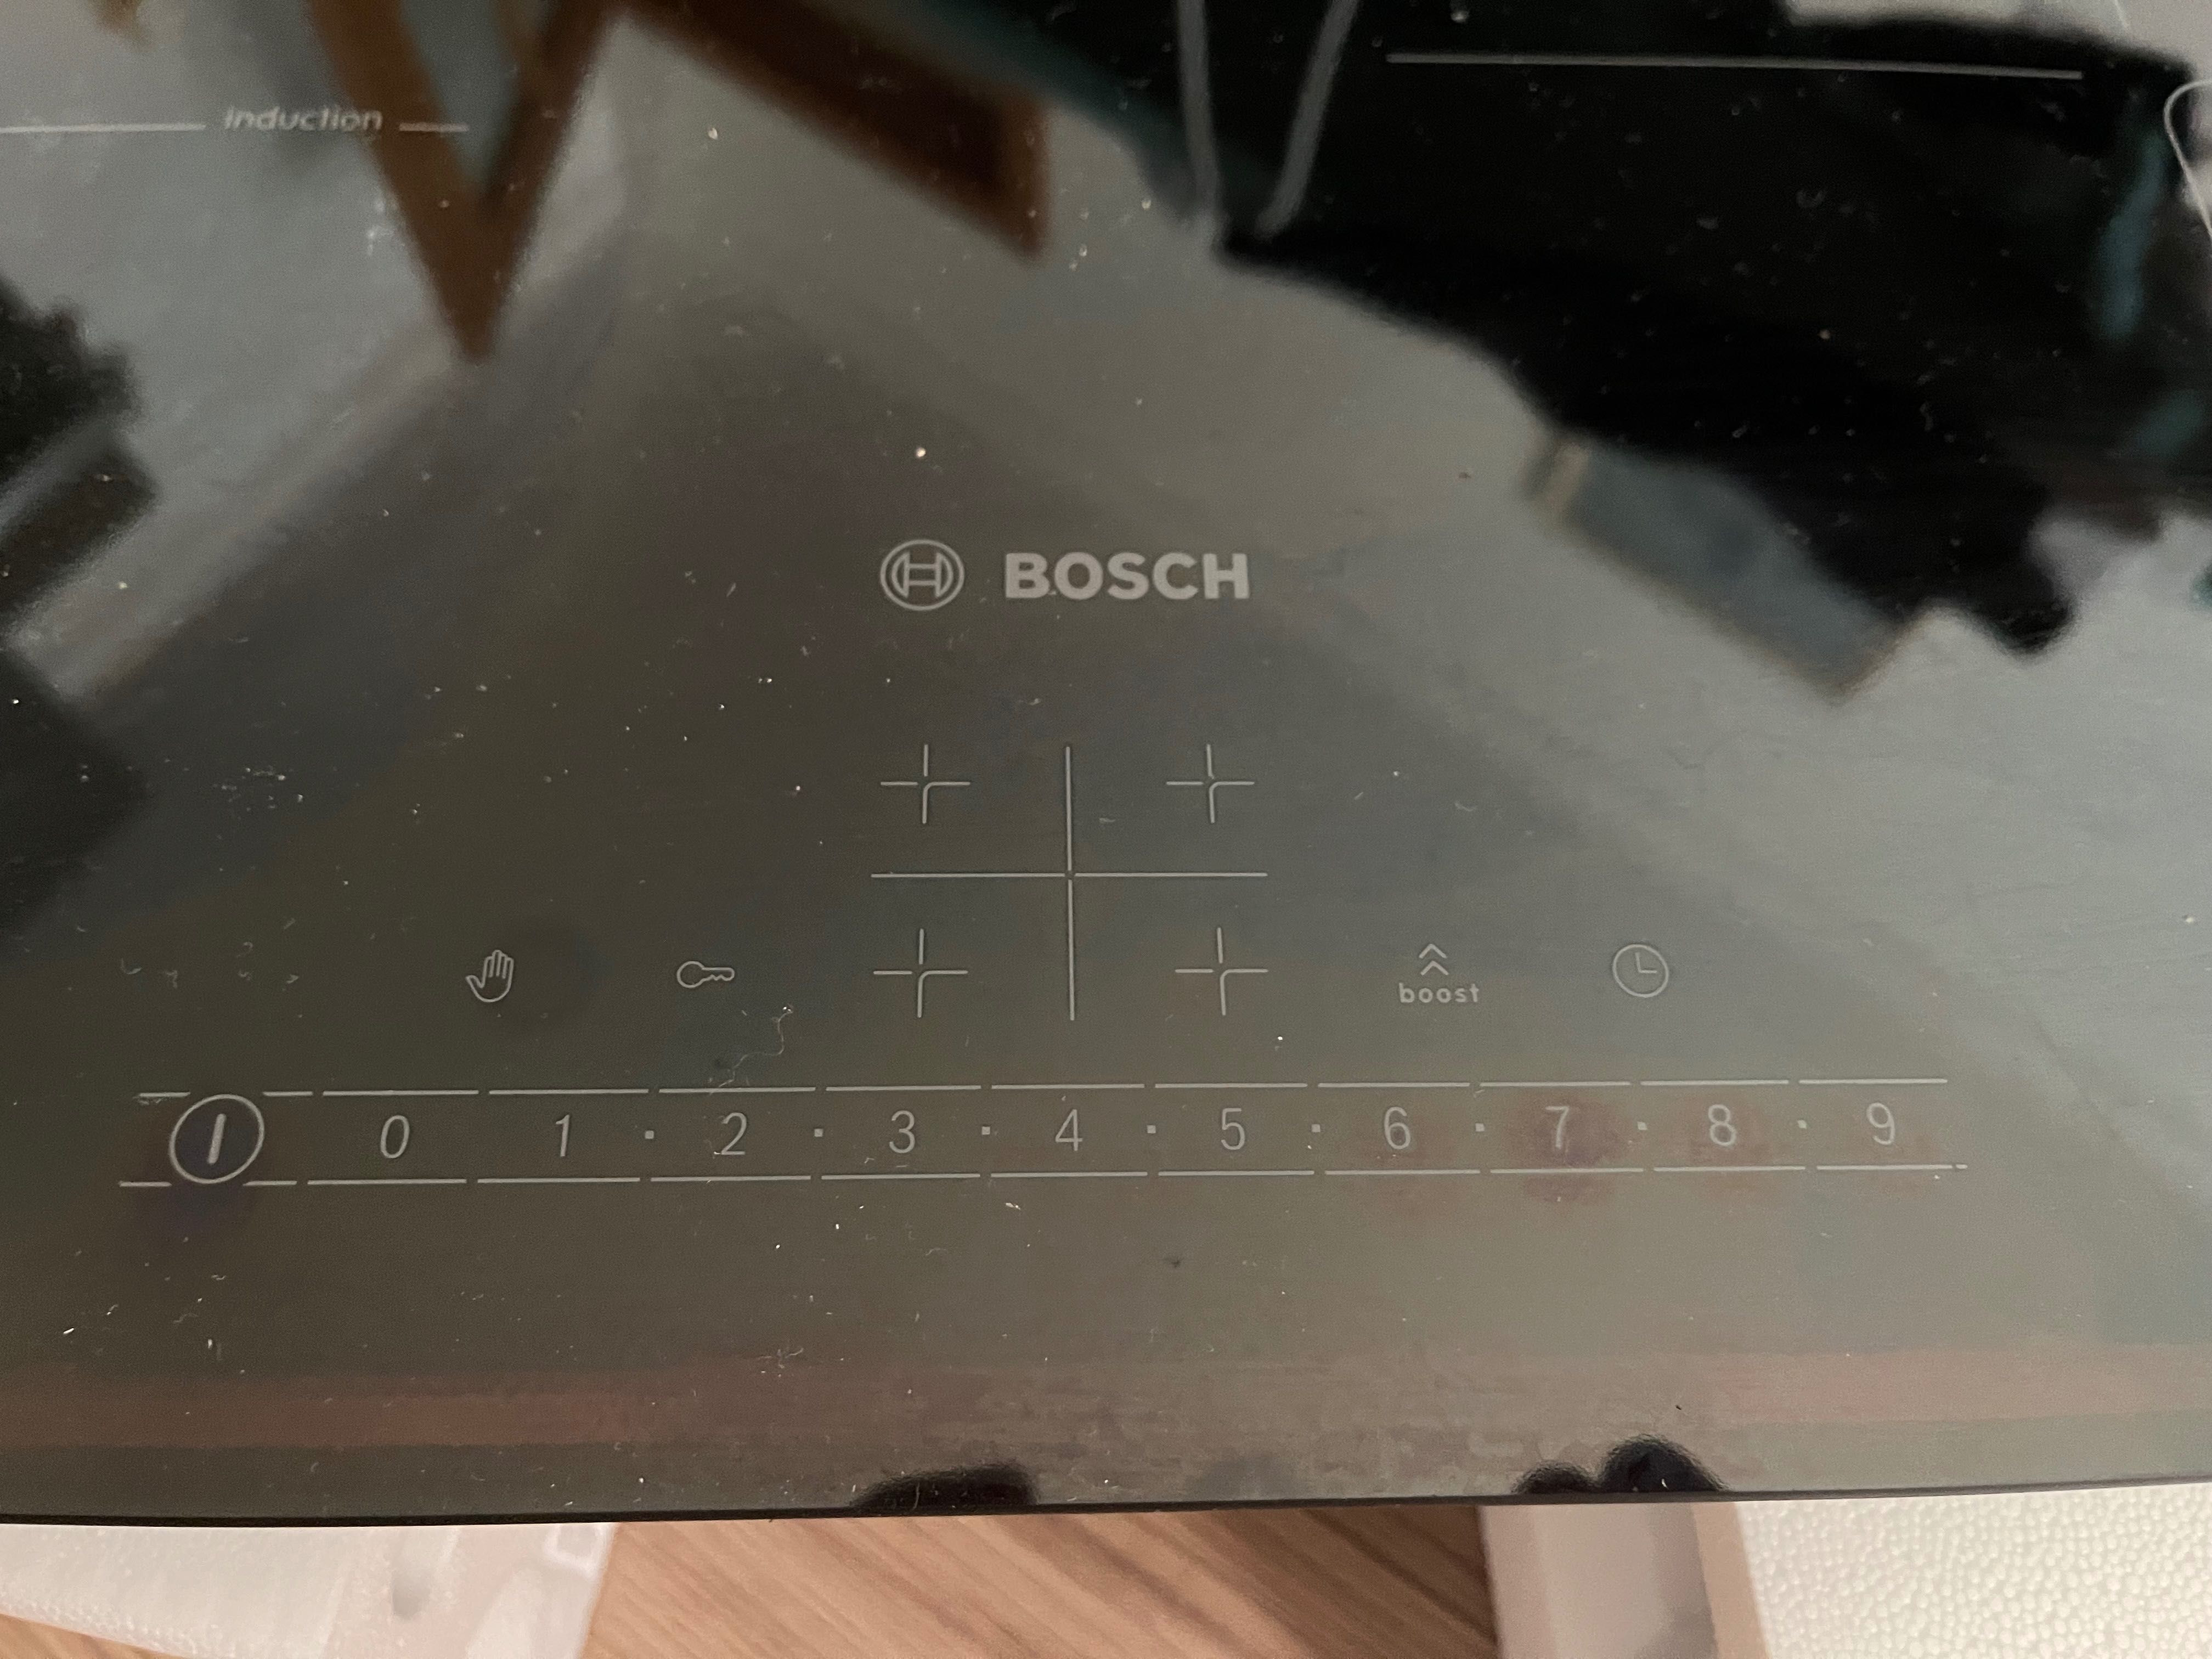 Placa de indução Bosch usada (rachada mas a funcionar)